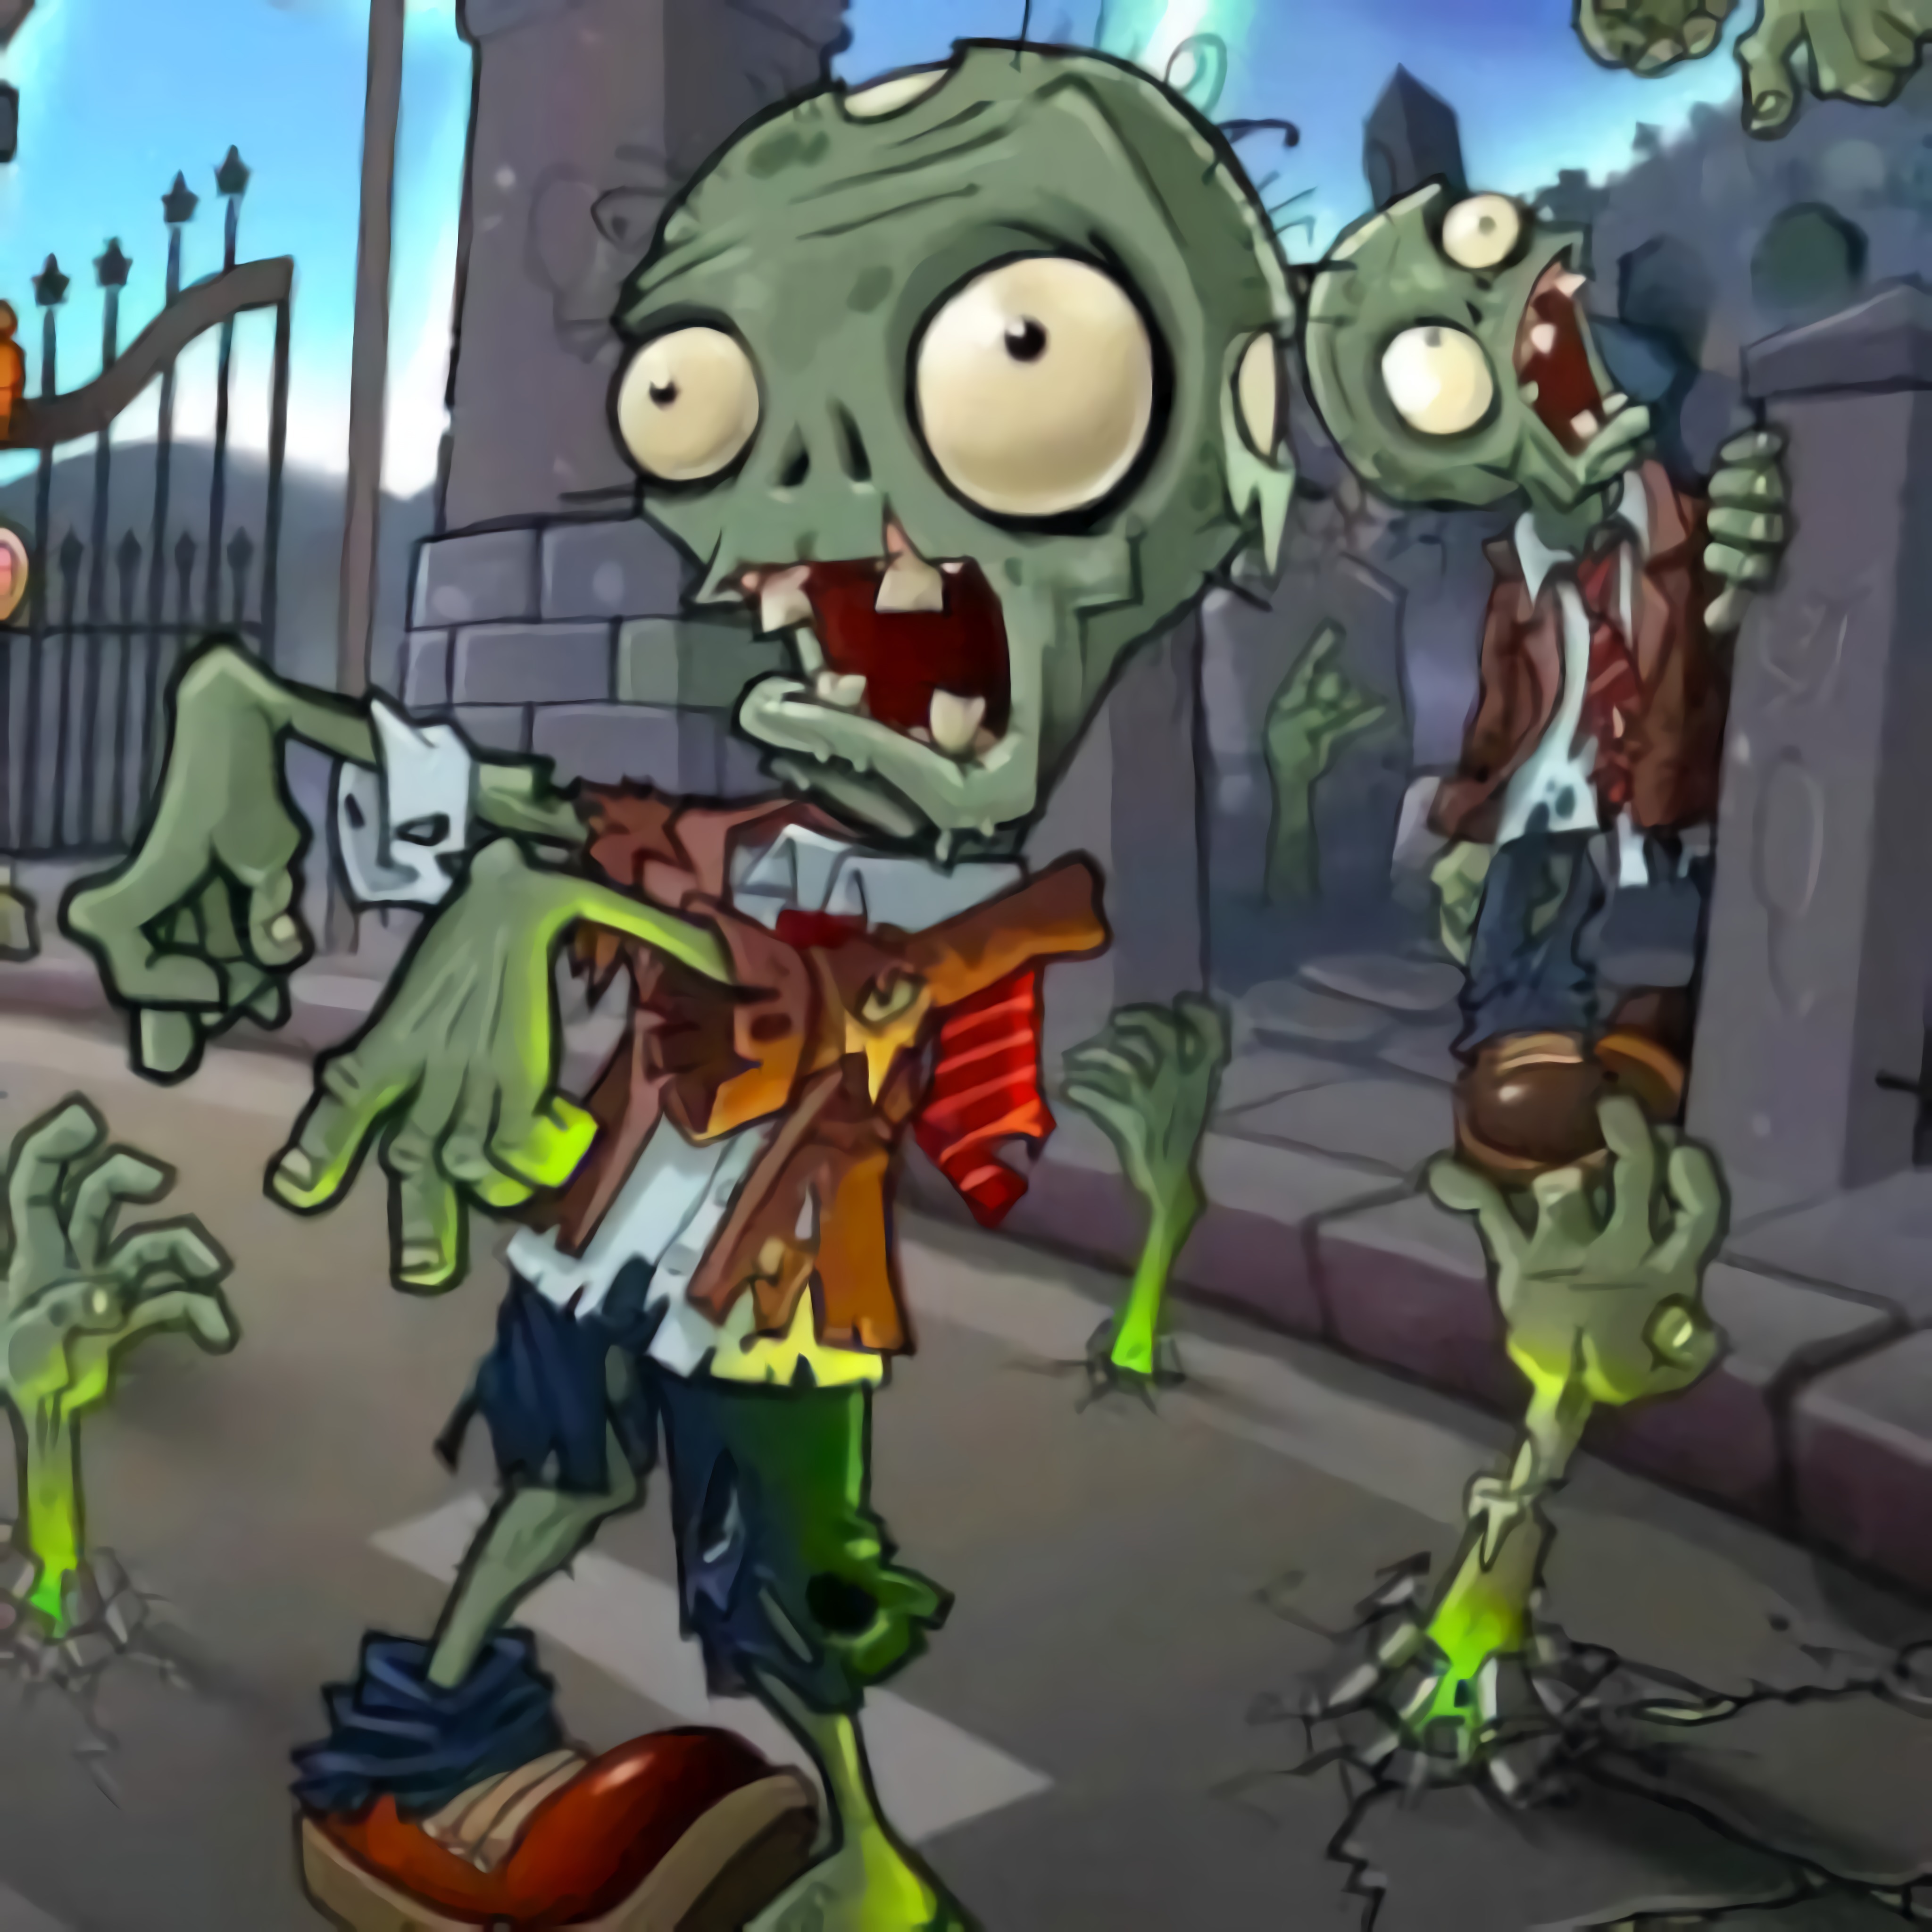 Бесплатная игра зомби 3. Растения против зомби зомботар зомби. Зомби против растений только зомби только зомби. Зомби PVZ для игры.